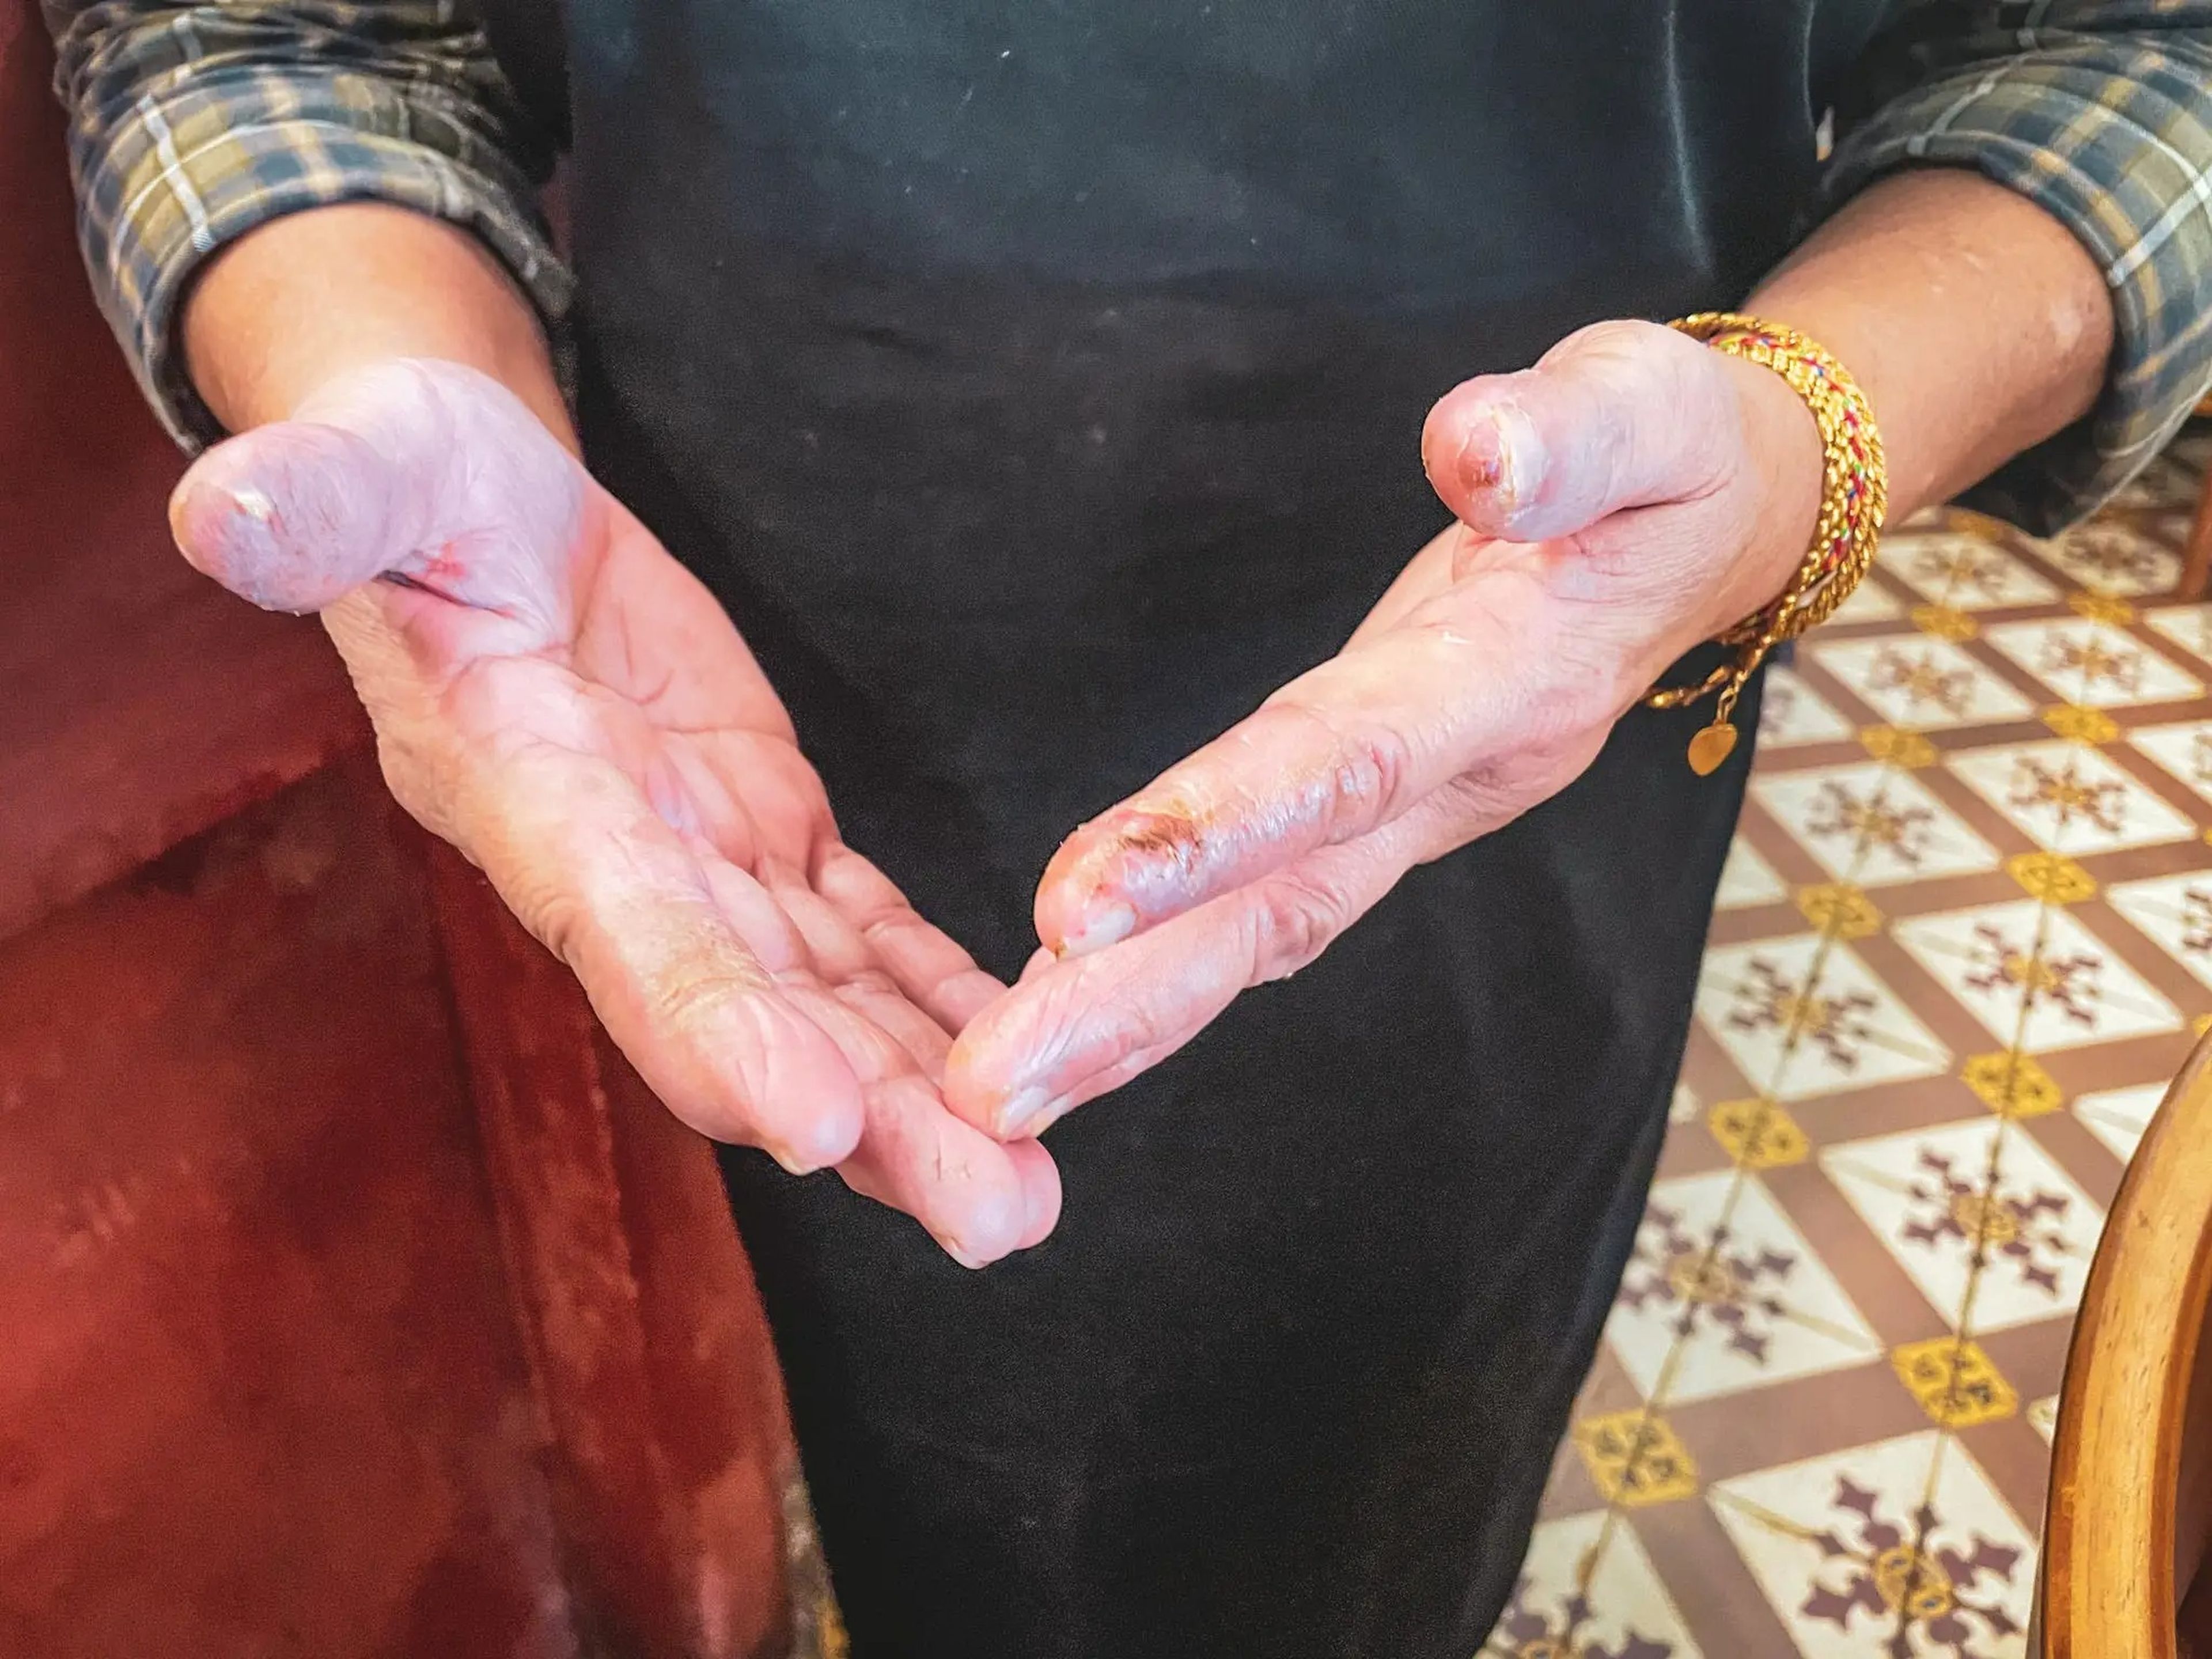 Las manos de Lean Gaik le ayudaron a cocinar hasta conseguir una de las primeras comidas con estrella Michelin de Malasia.